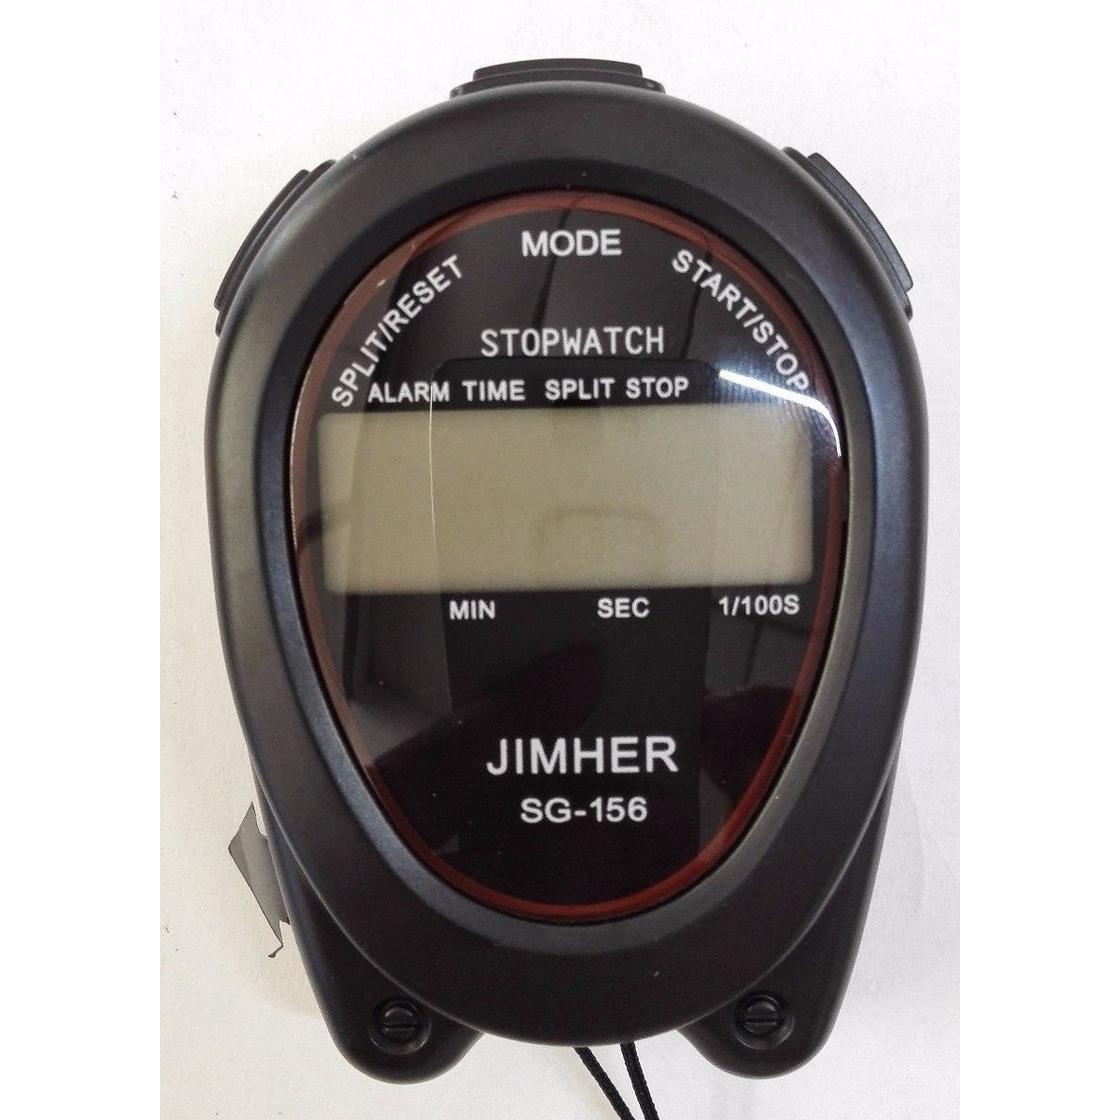  Si buscas Cronometro Deportivo Digital Profesional Jimher Sg-156 puedes comprarlo con MODAVELA está en venta al mejor precio